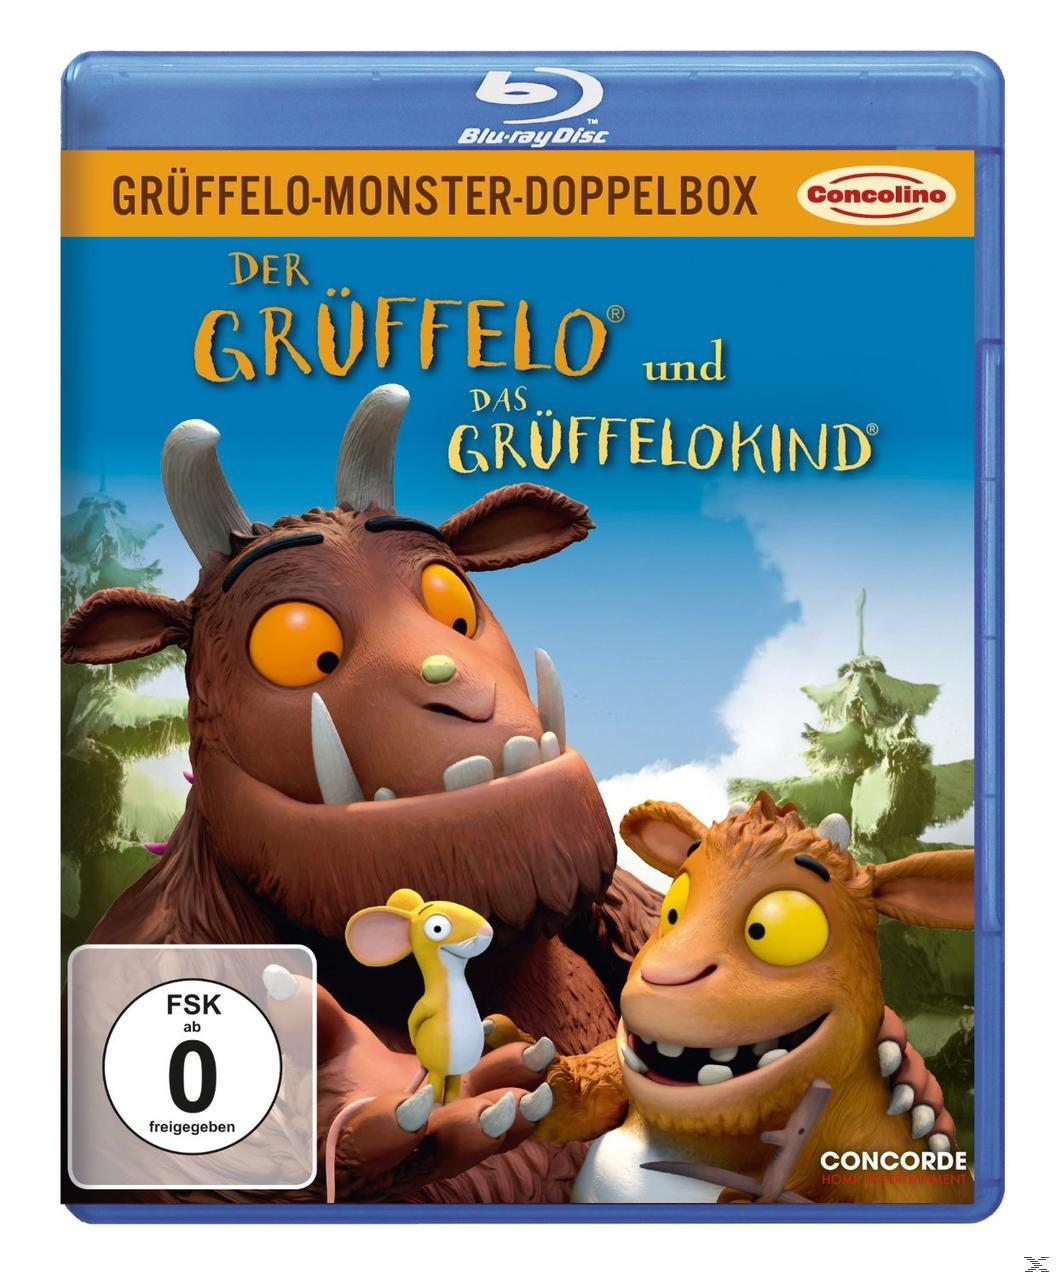 Grüffelo-Monster-Doppelbox - Der Blu-ray Das Grüffelo und Grüffelokind